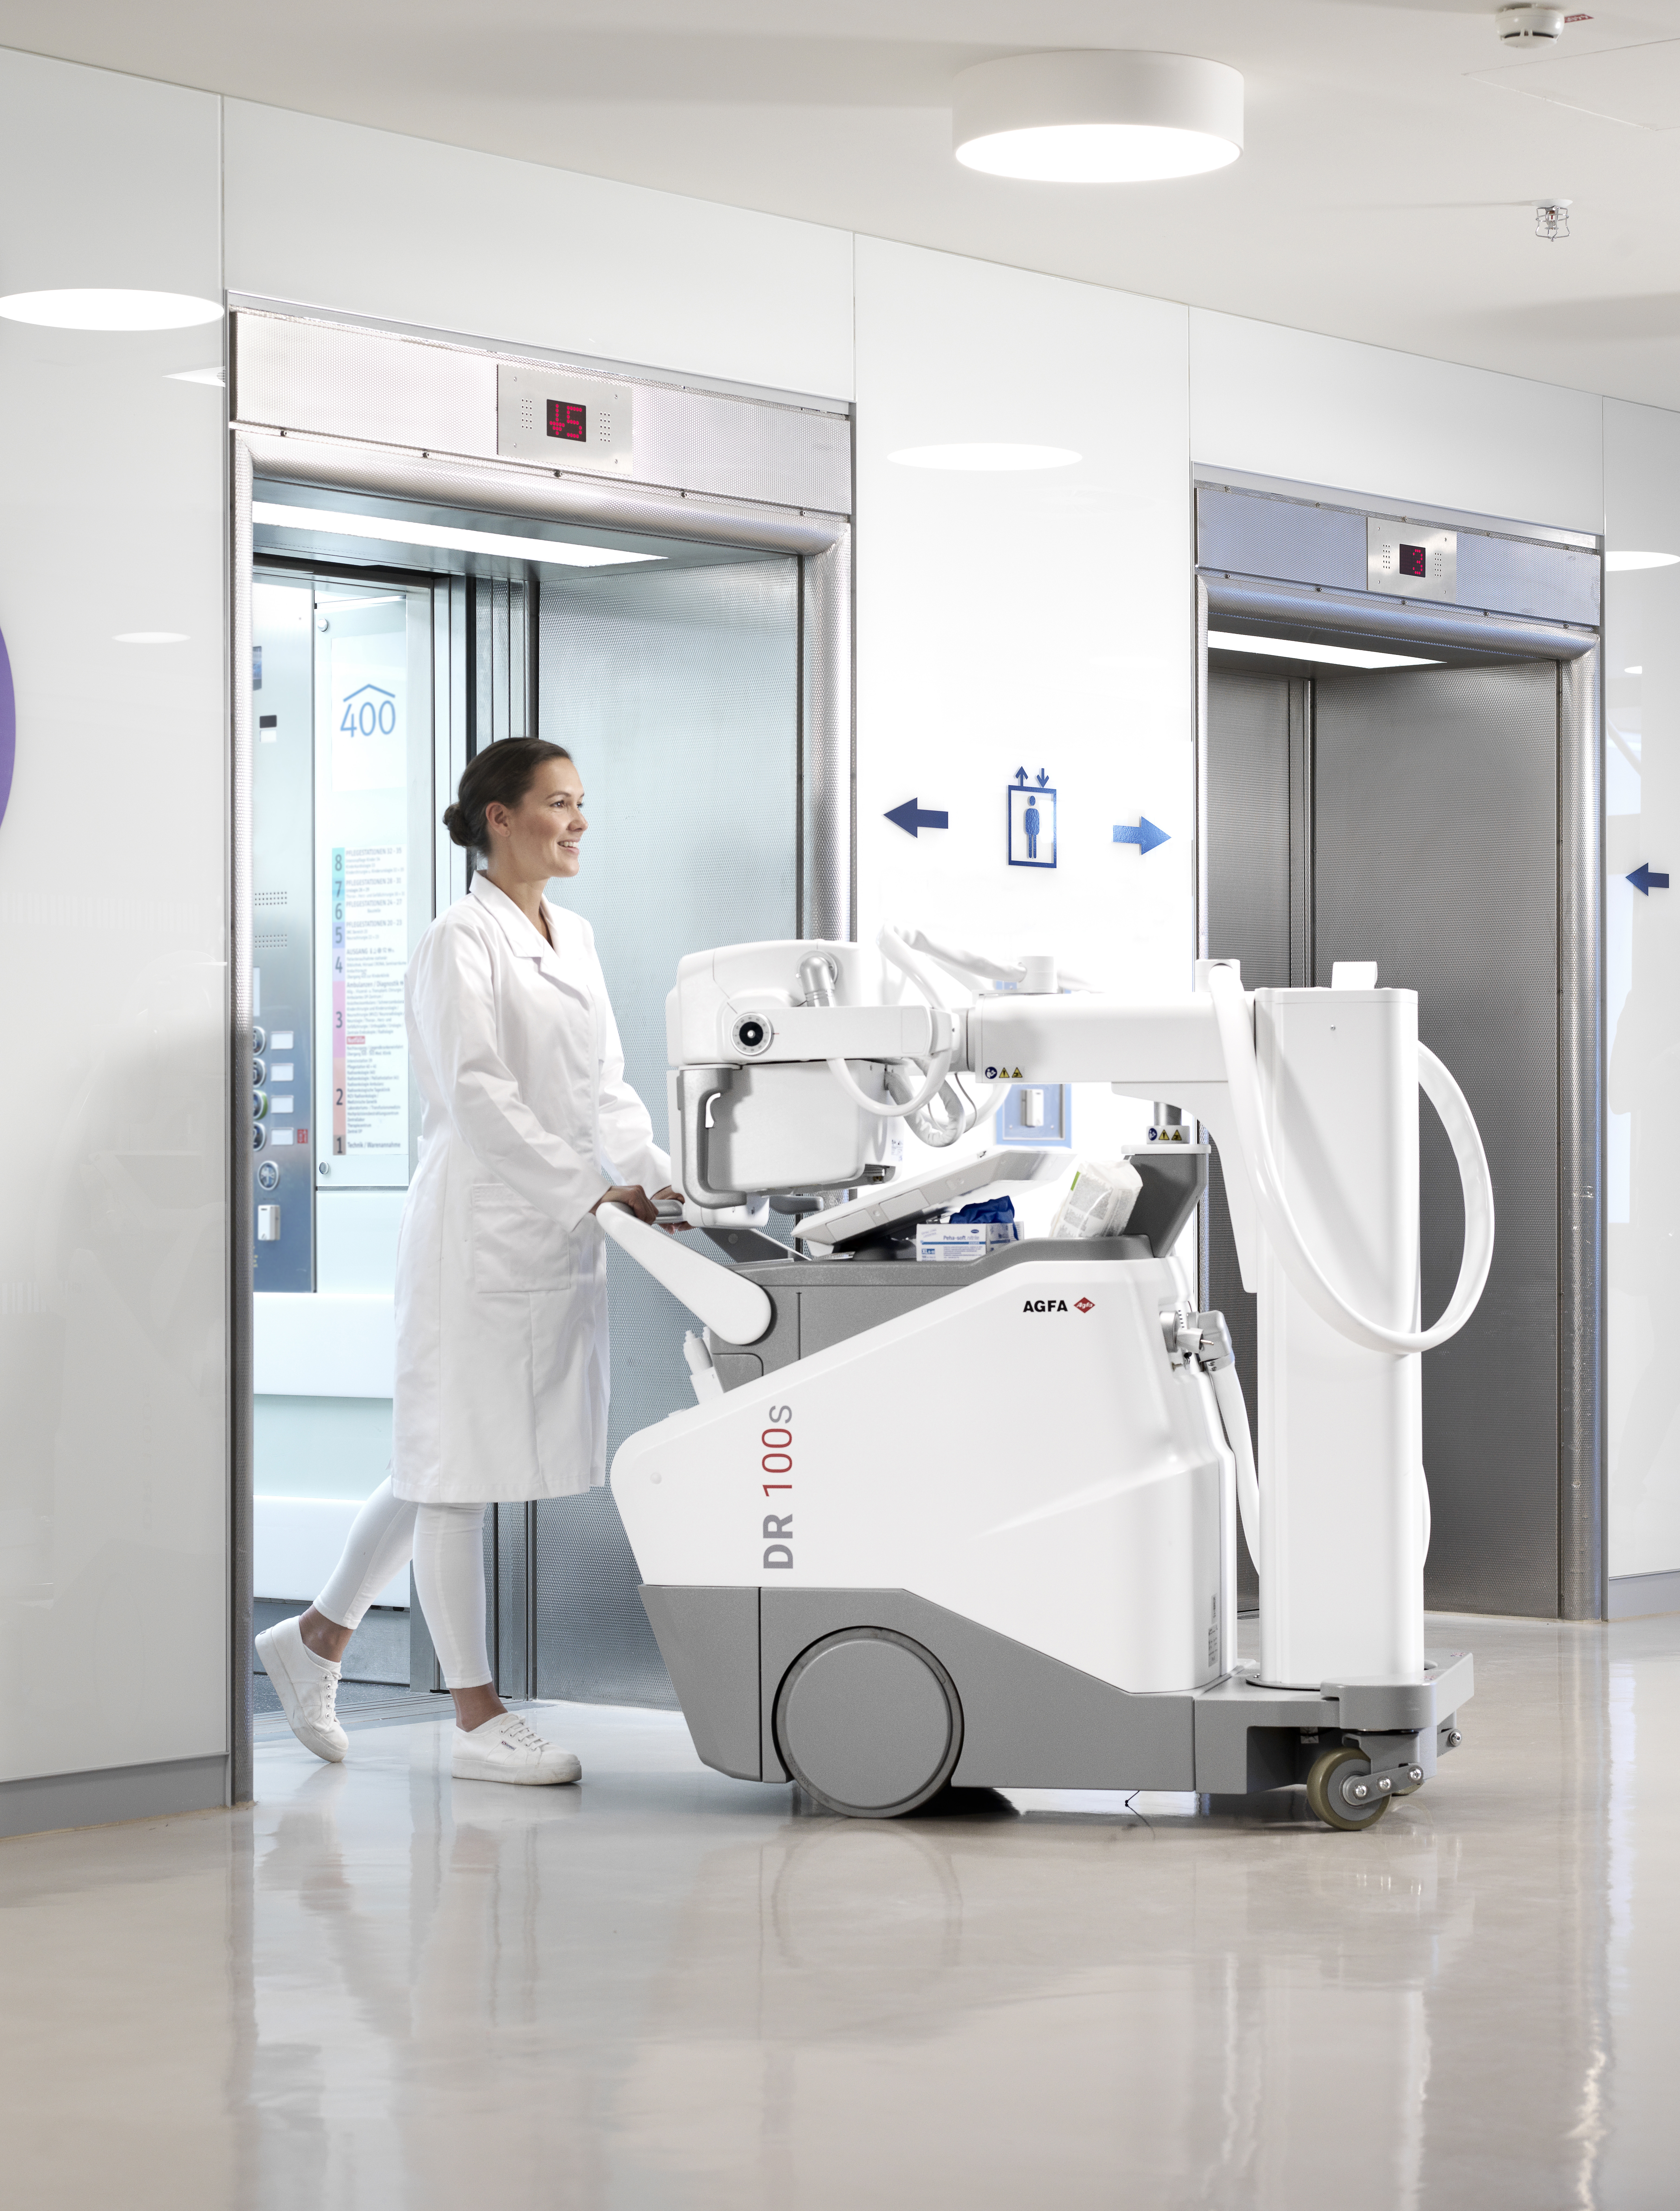 Din foretrukne partner på diagnostisk udstyr - Agfa DR 100s - Mobil røntgen